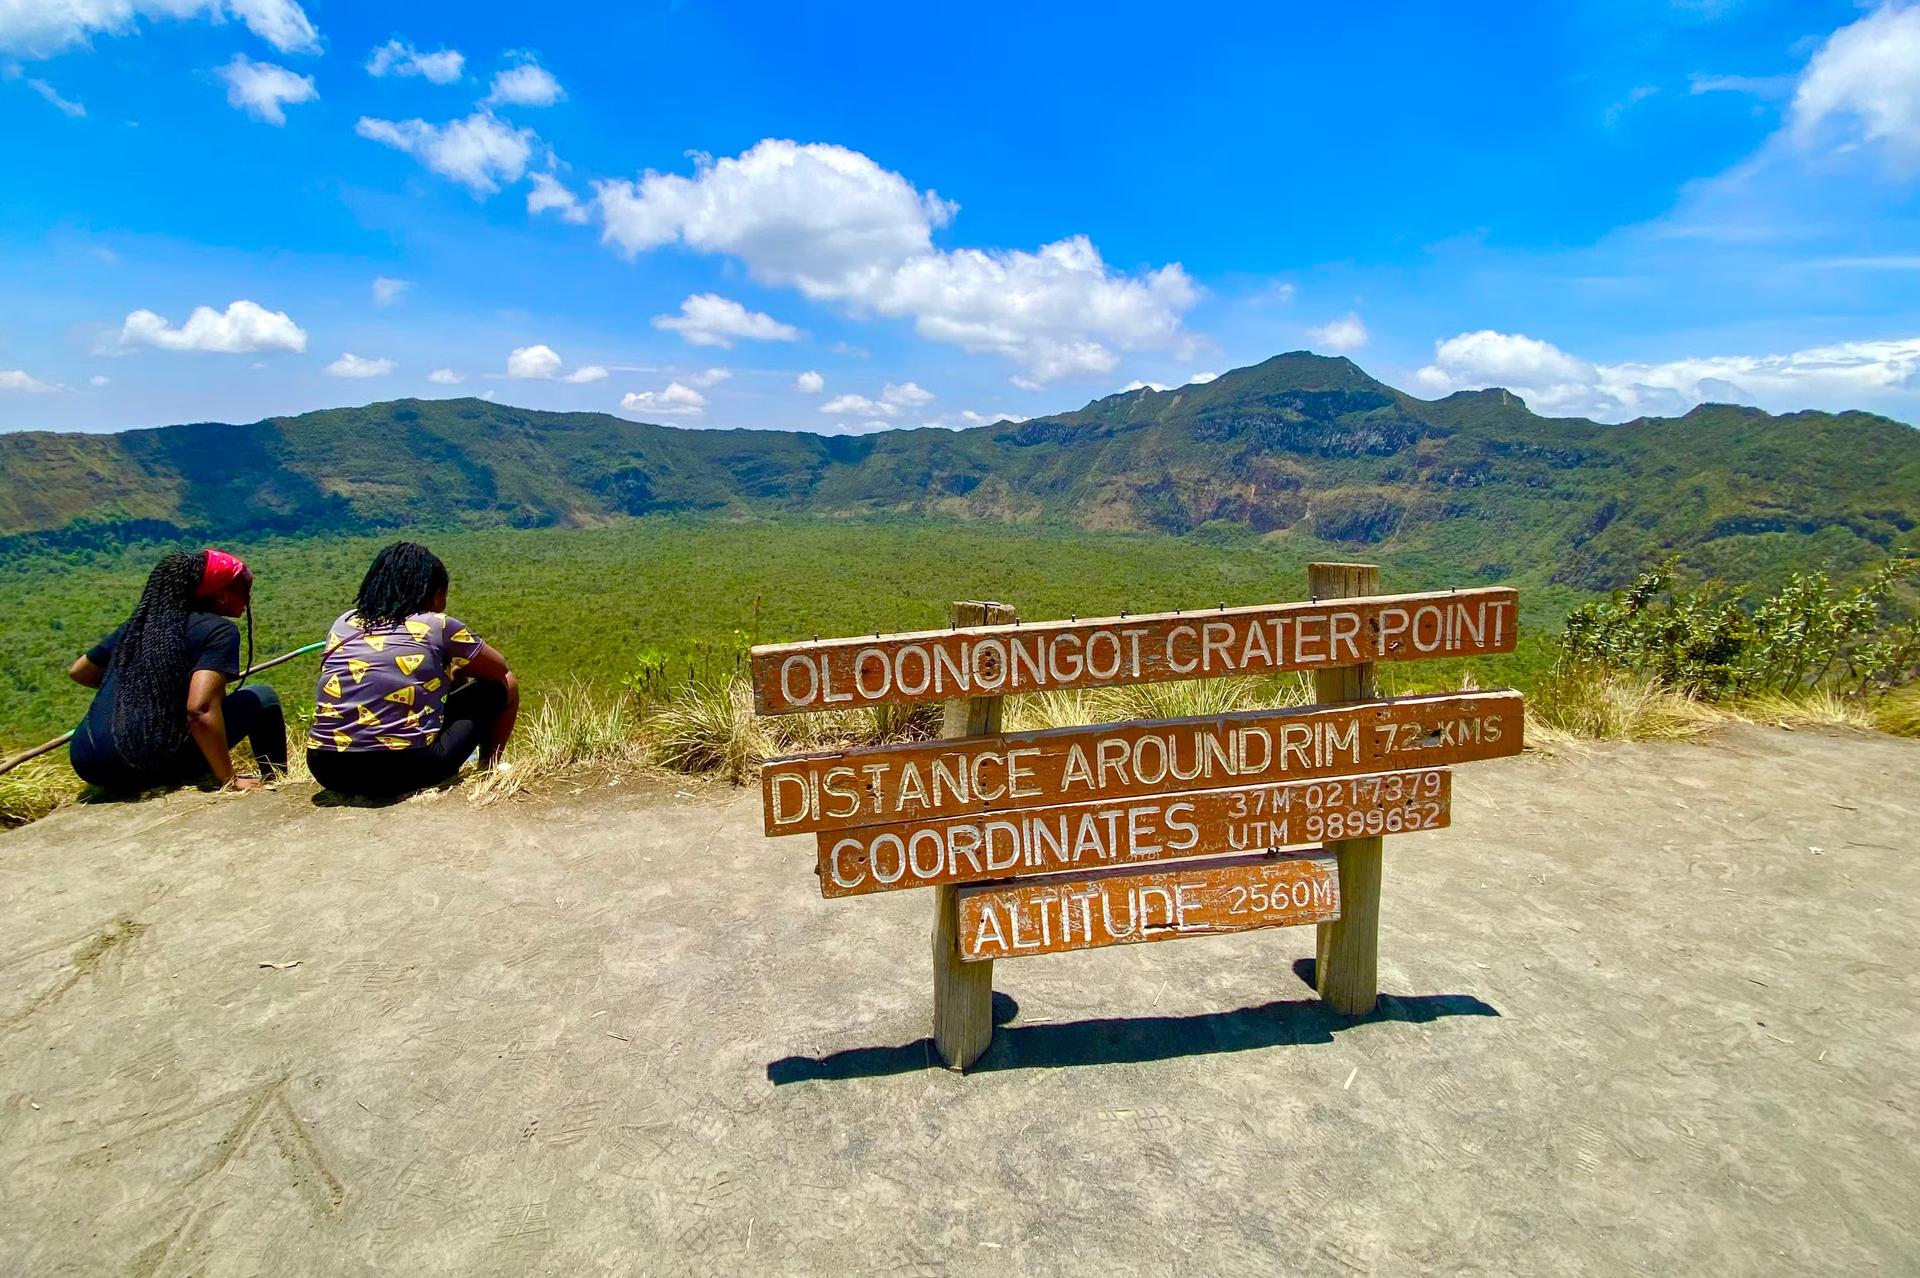 Två vandrare sitter vända mot en vulkantopp i en nationalpark